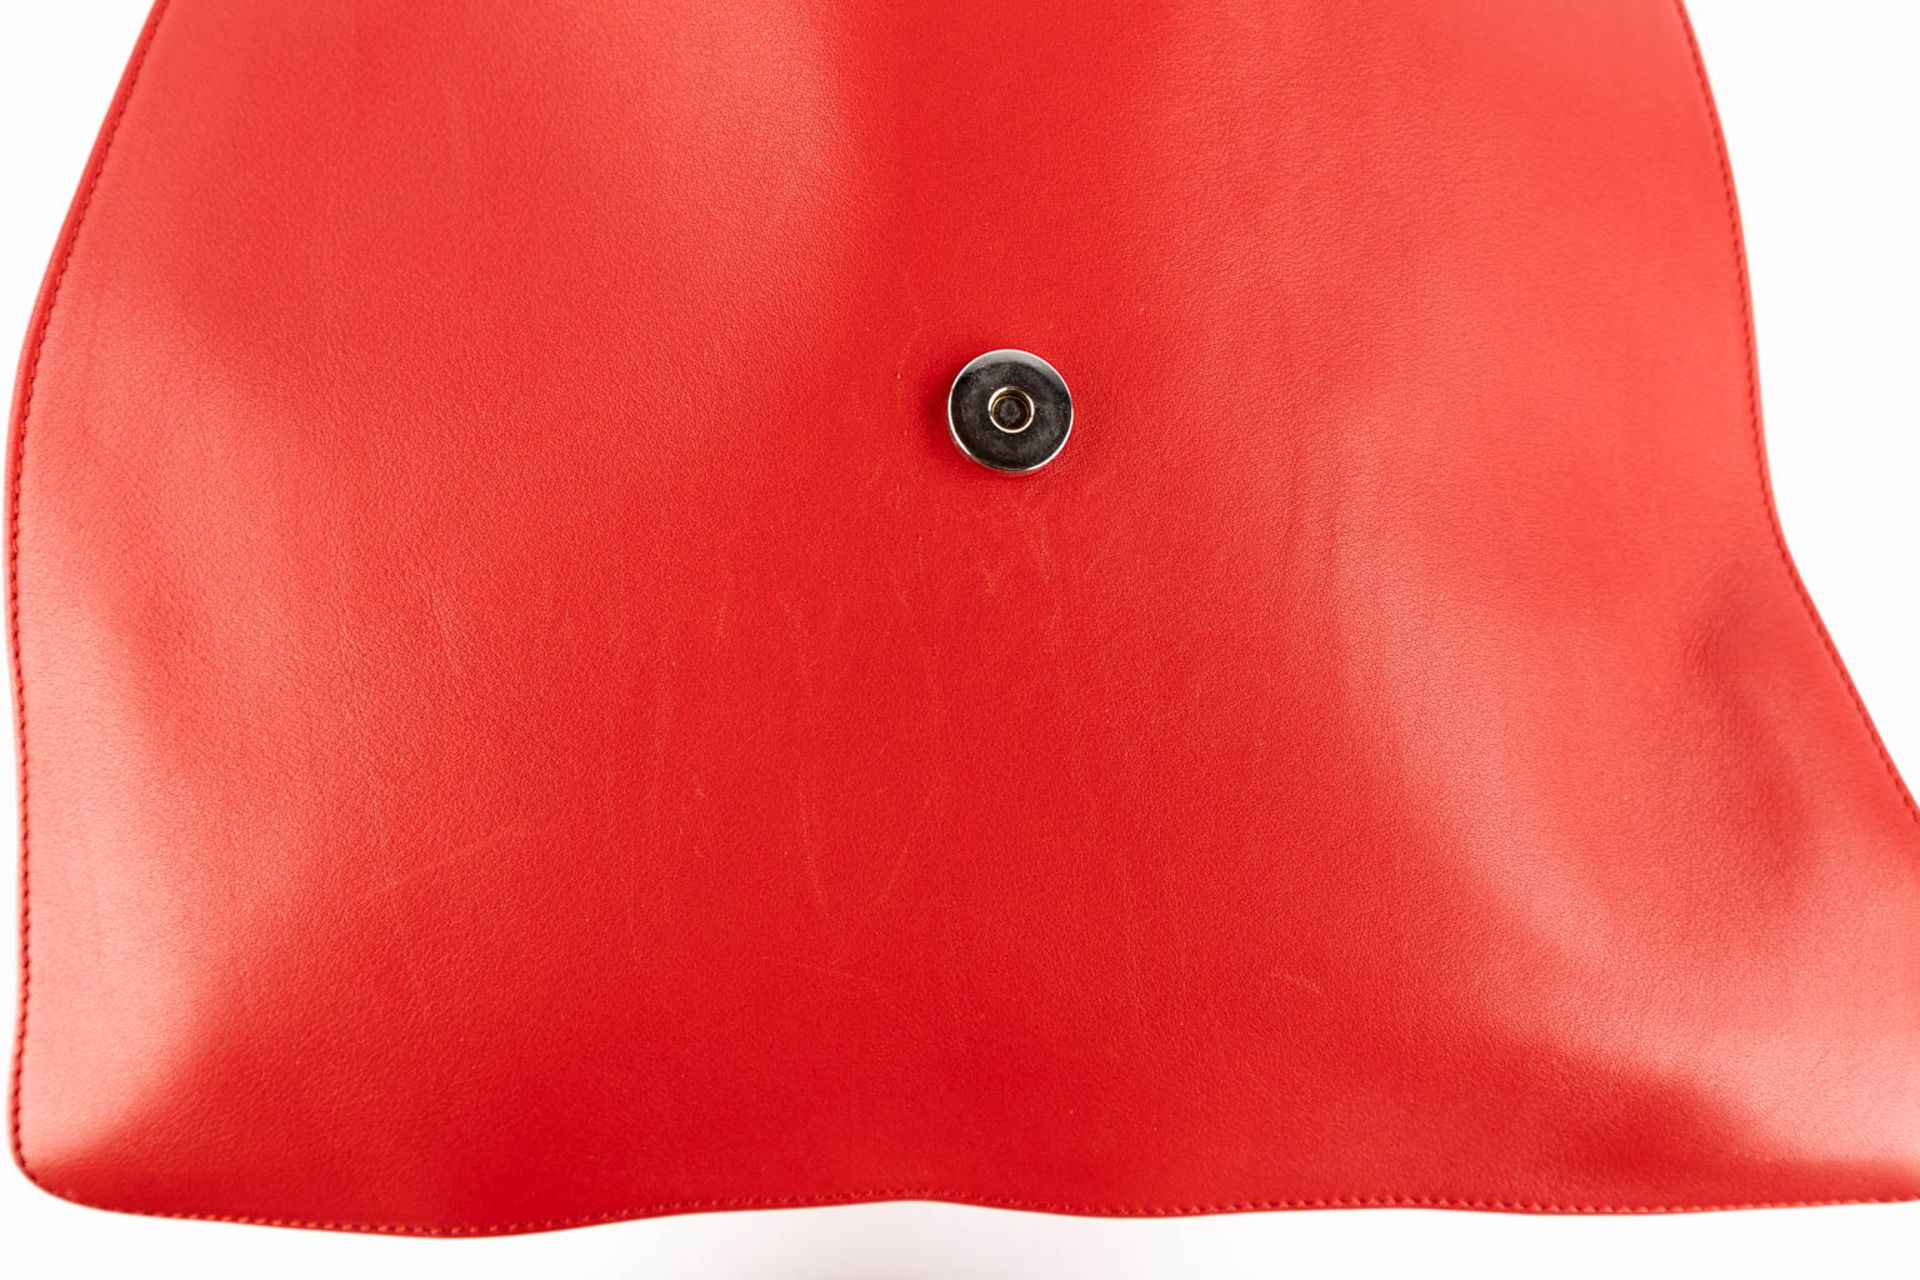 Escada, a handbag made of red leather. (W:33 x H:28 cm) - Image 13 of 17